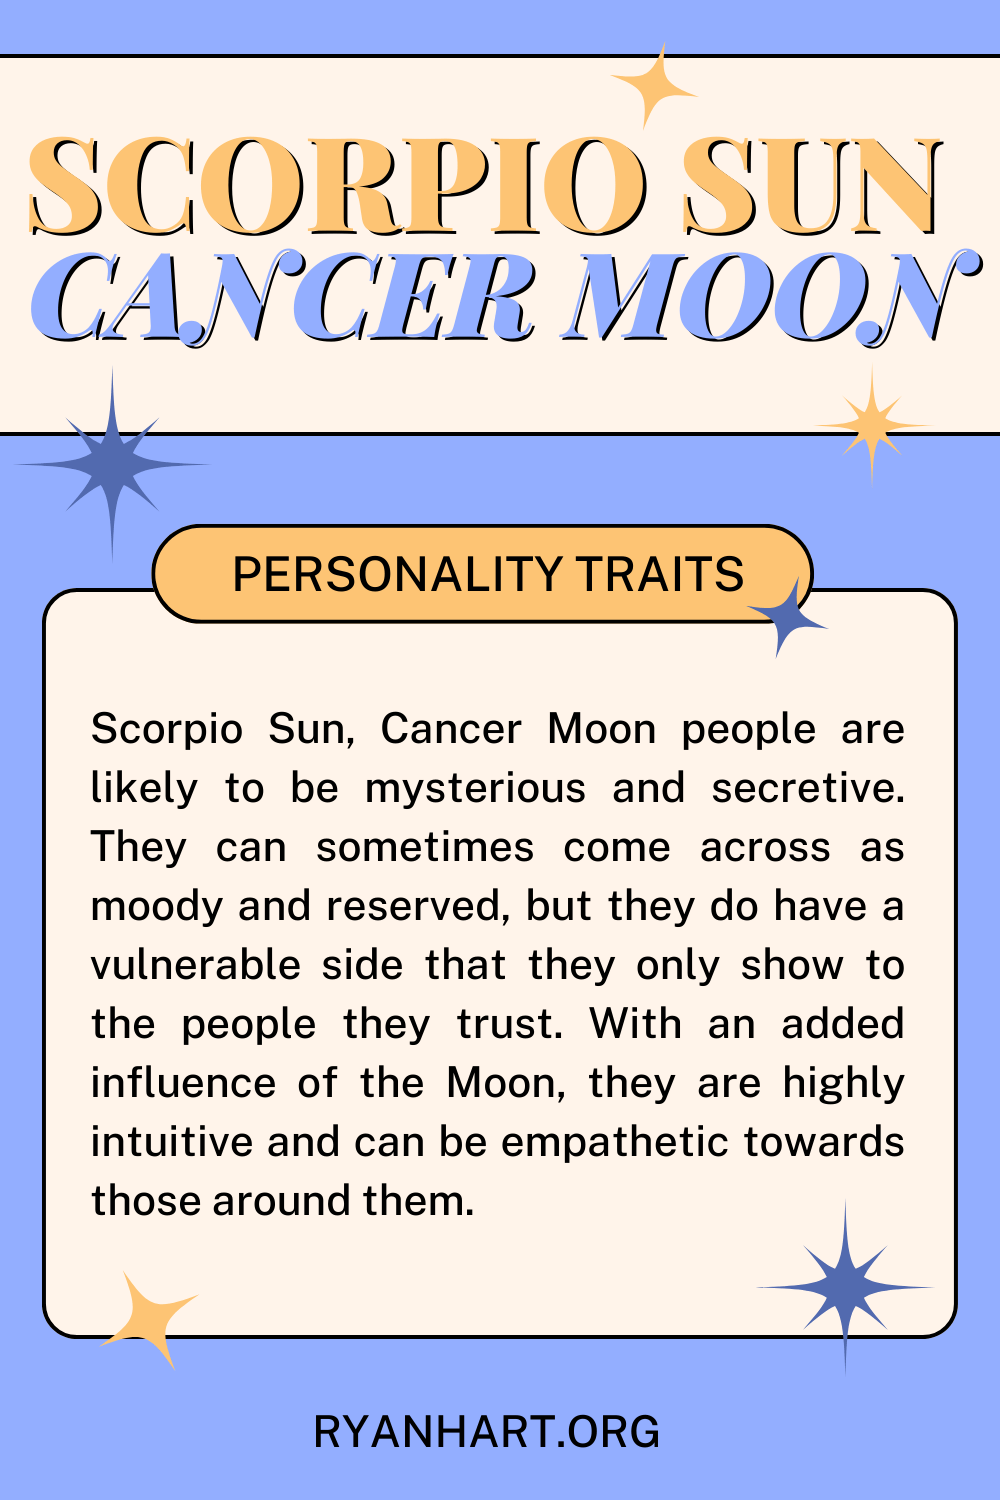 Scorpio Sun Cancer Moon Description